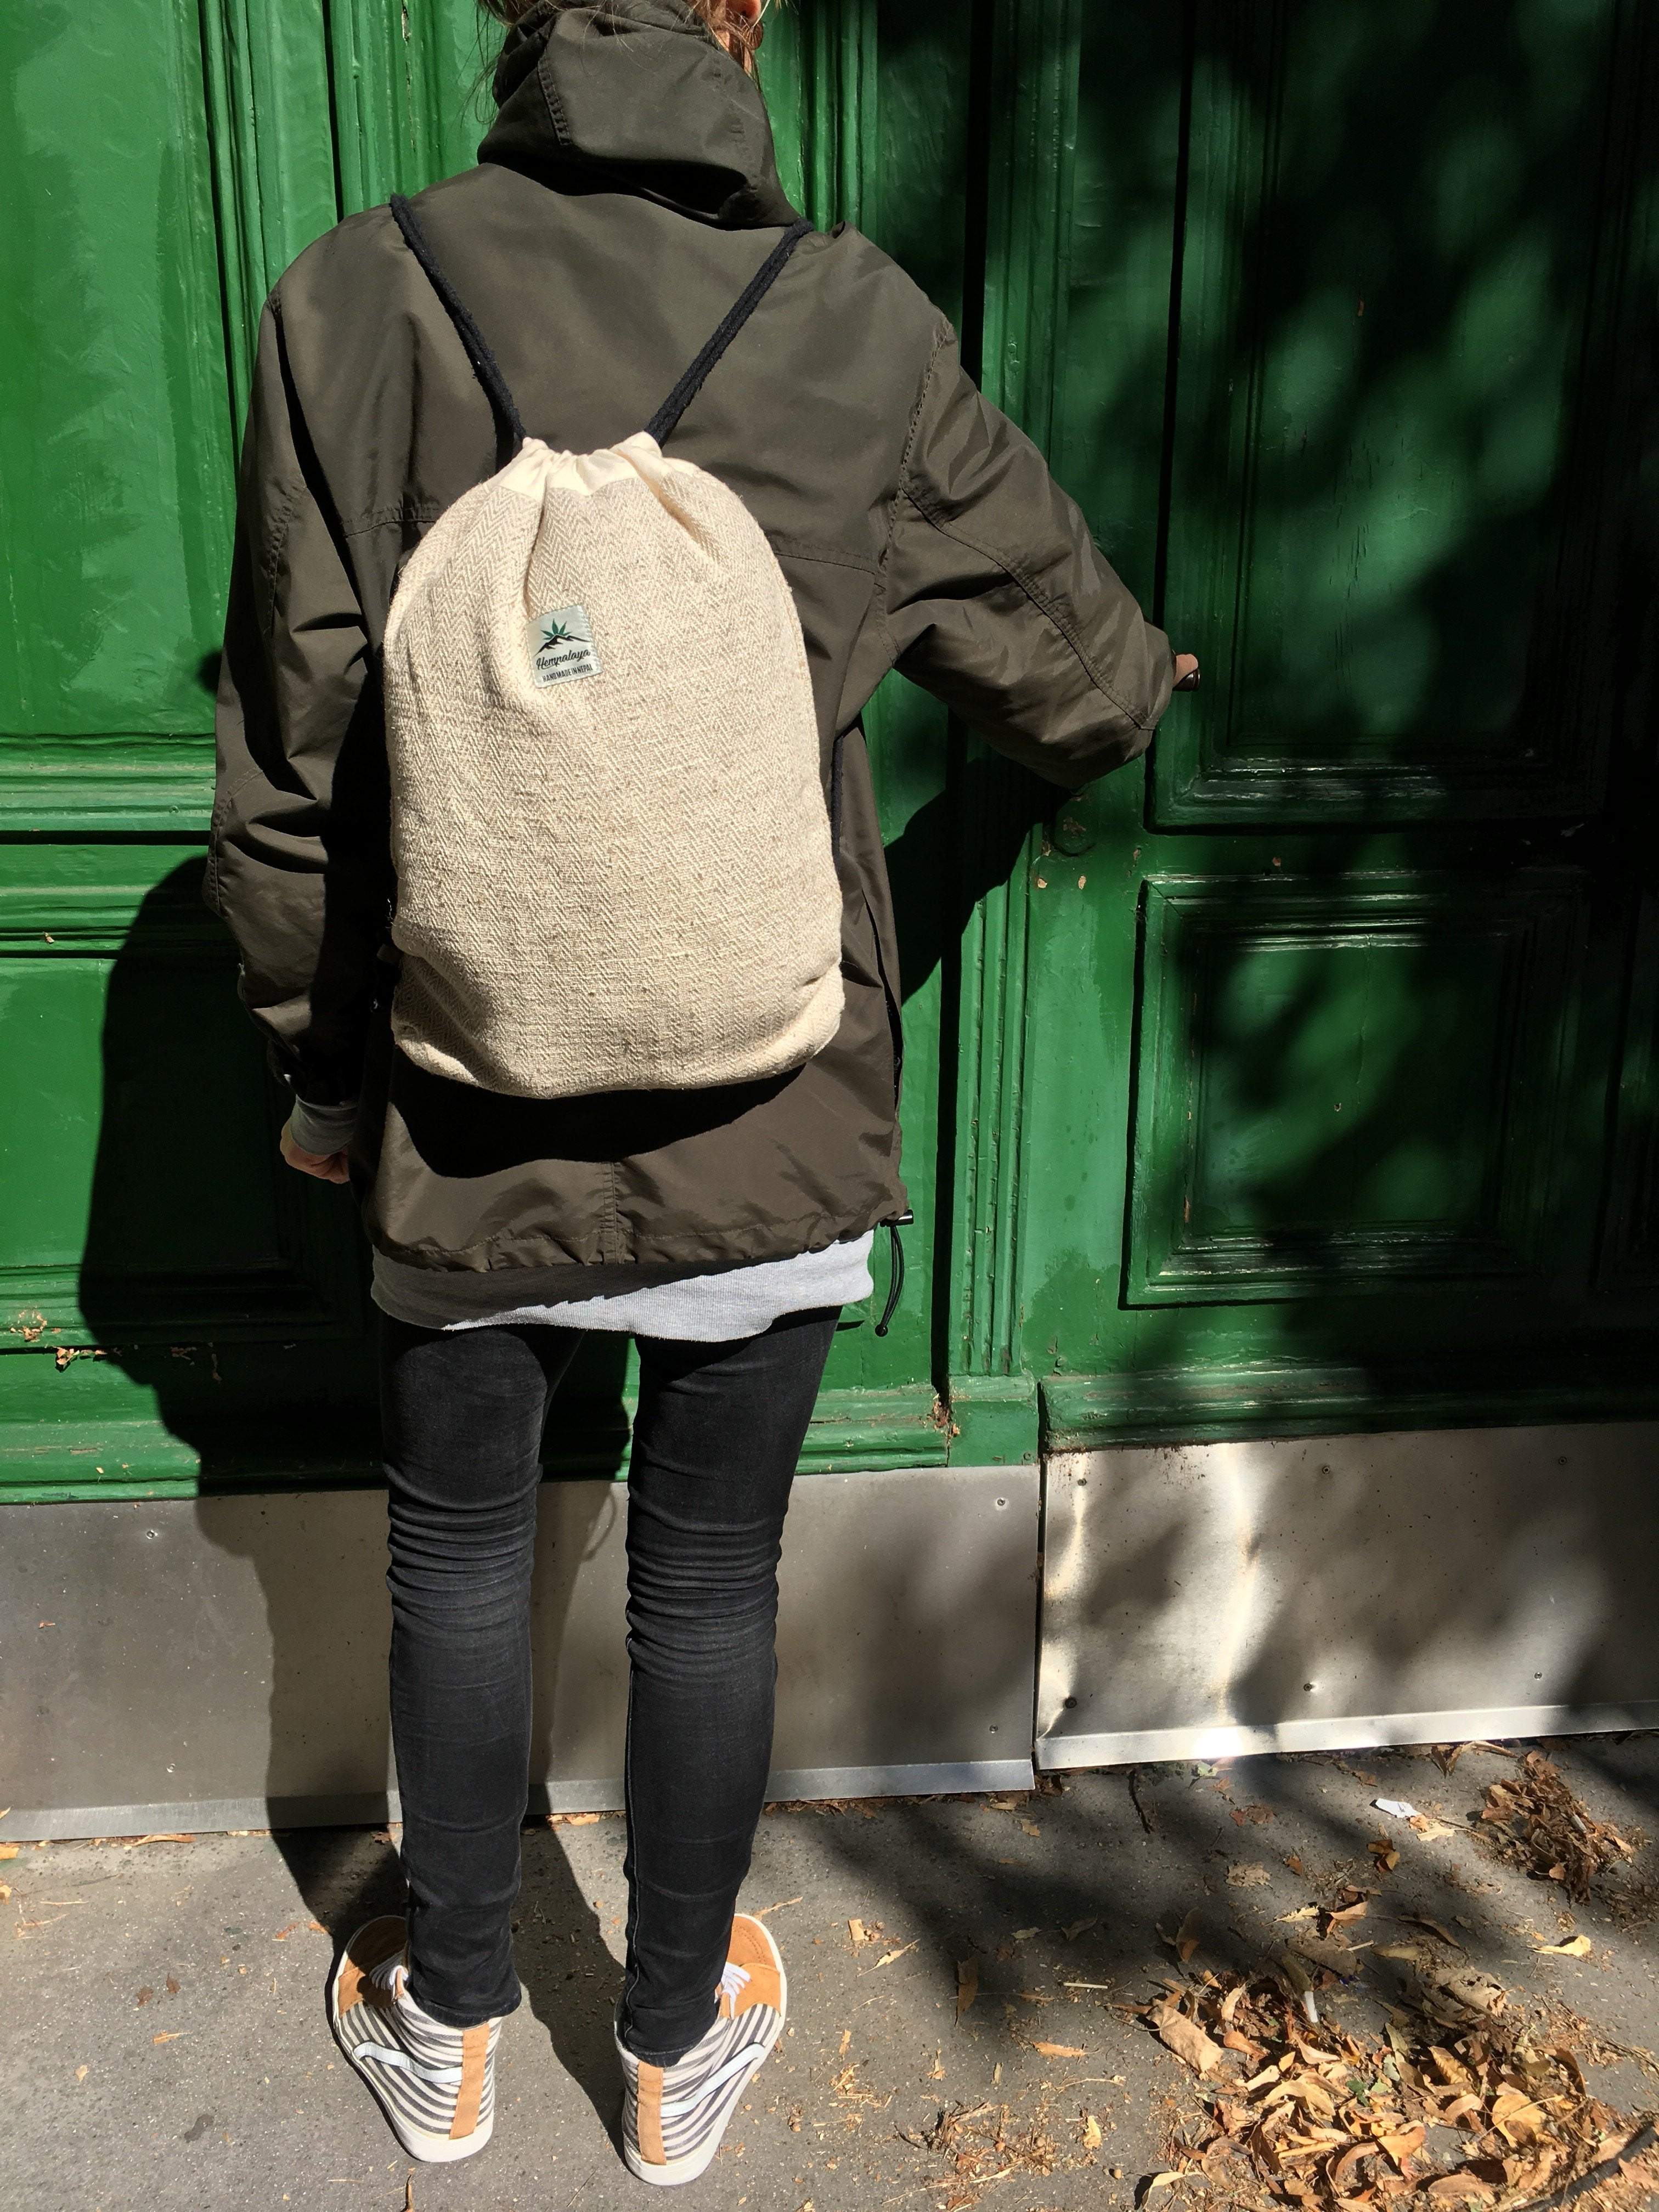 Hemp drawstring bag, natural - Hempalaya